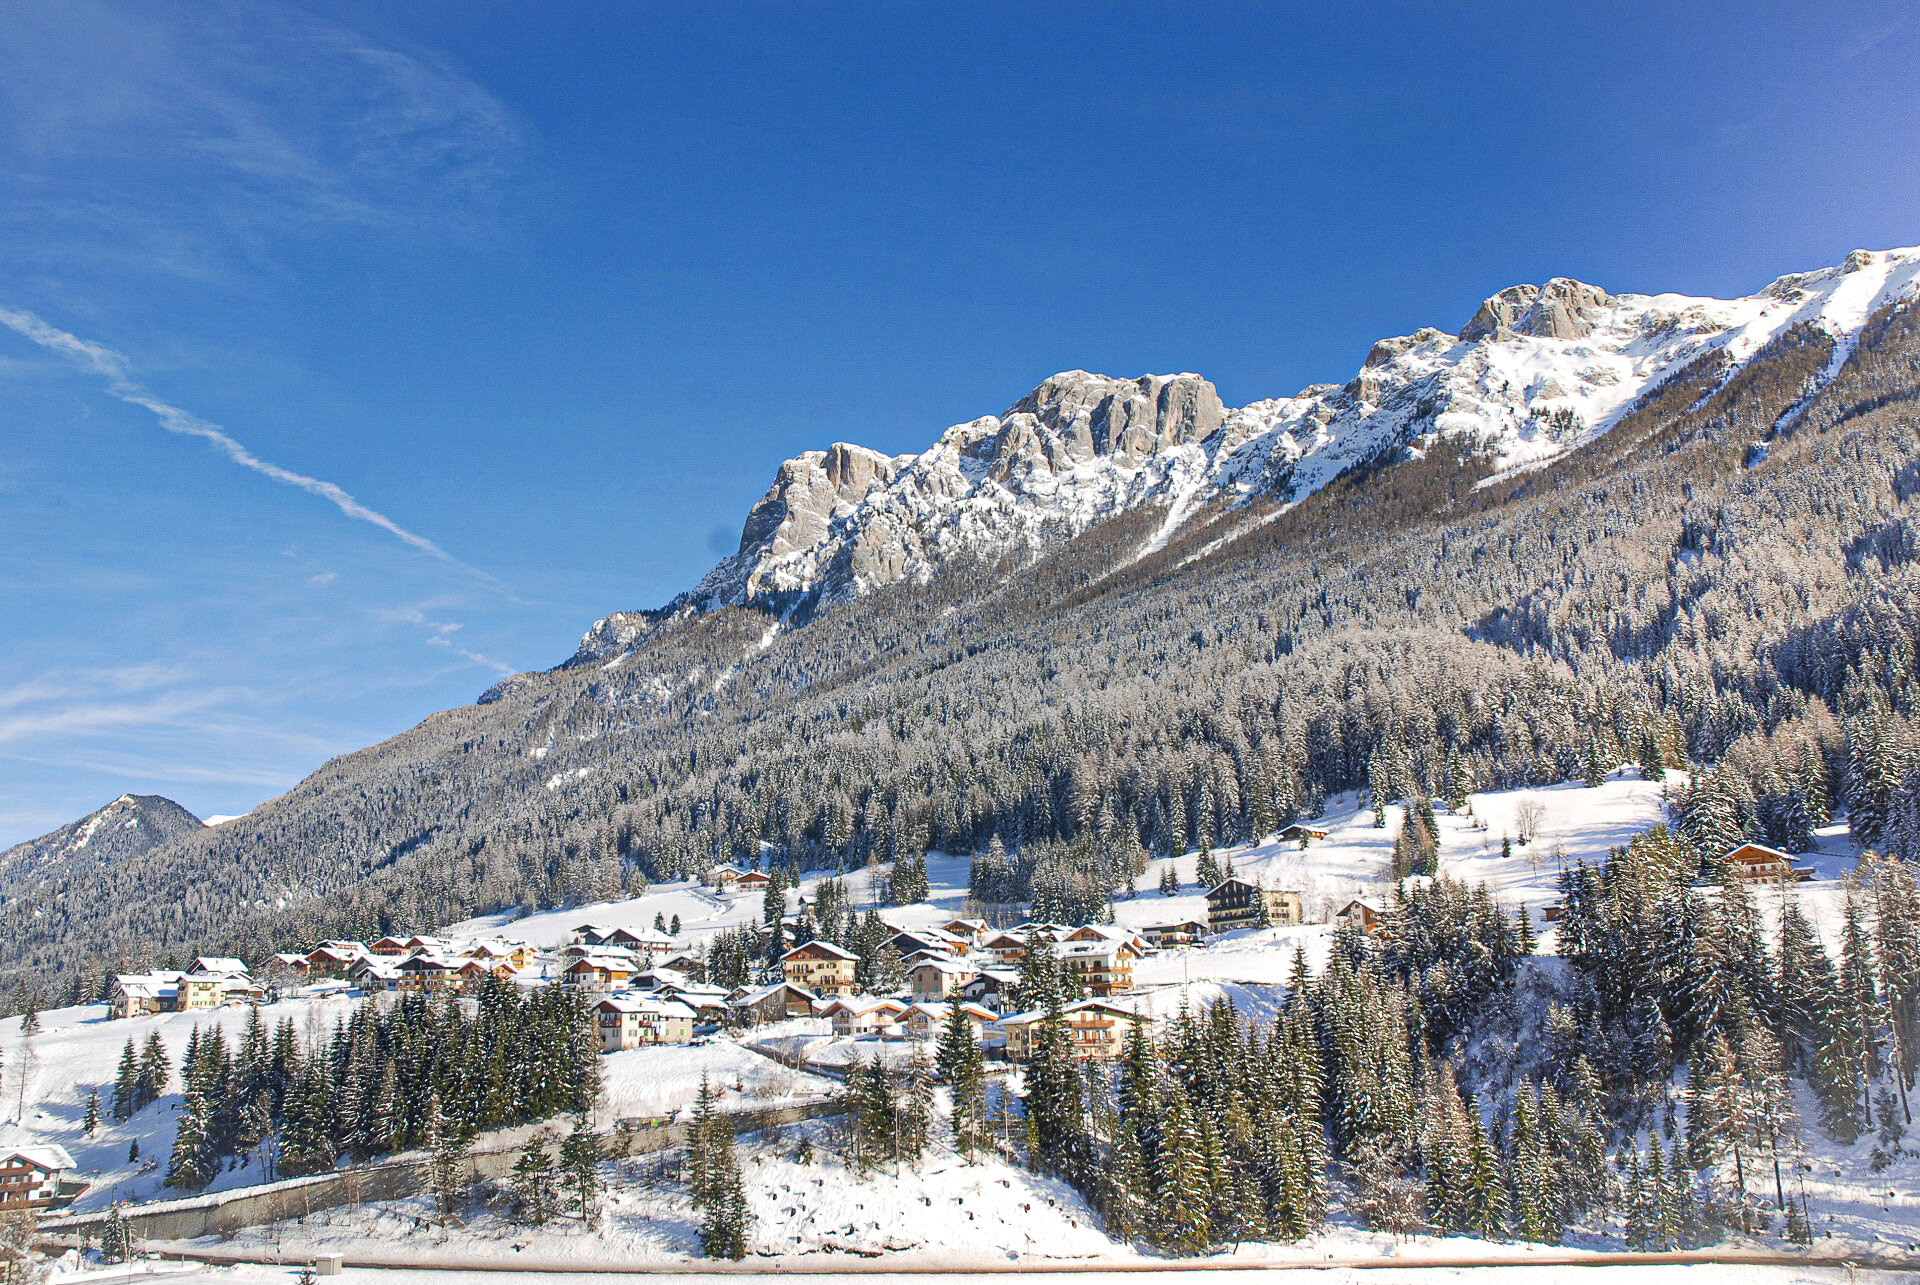 Il paese di Soraga di Fassa in inverno, con vista sull'abitato di Soraga Alta e Cima Dodici | © Pierpaolo Boso - Archivio Immagini ApT Val di Fassa